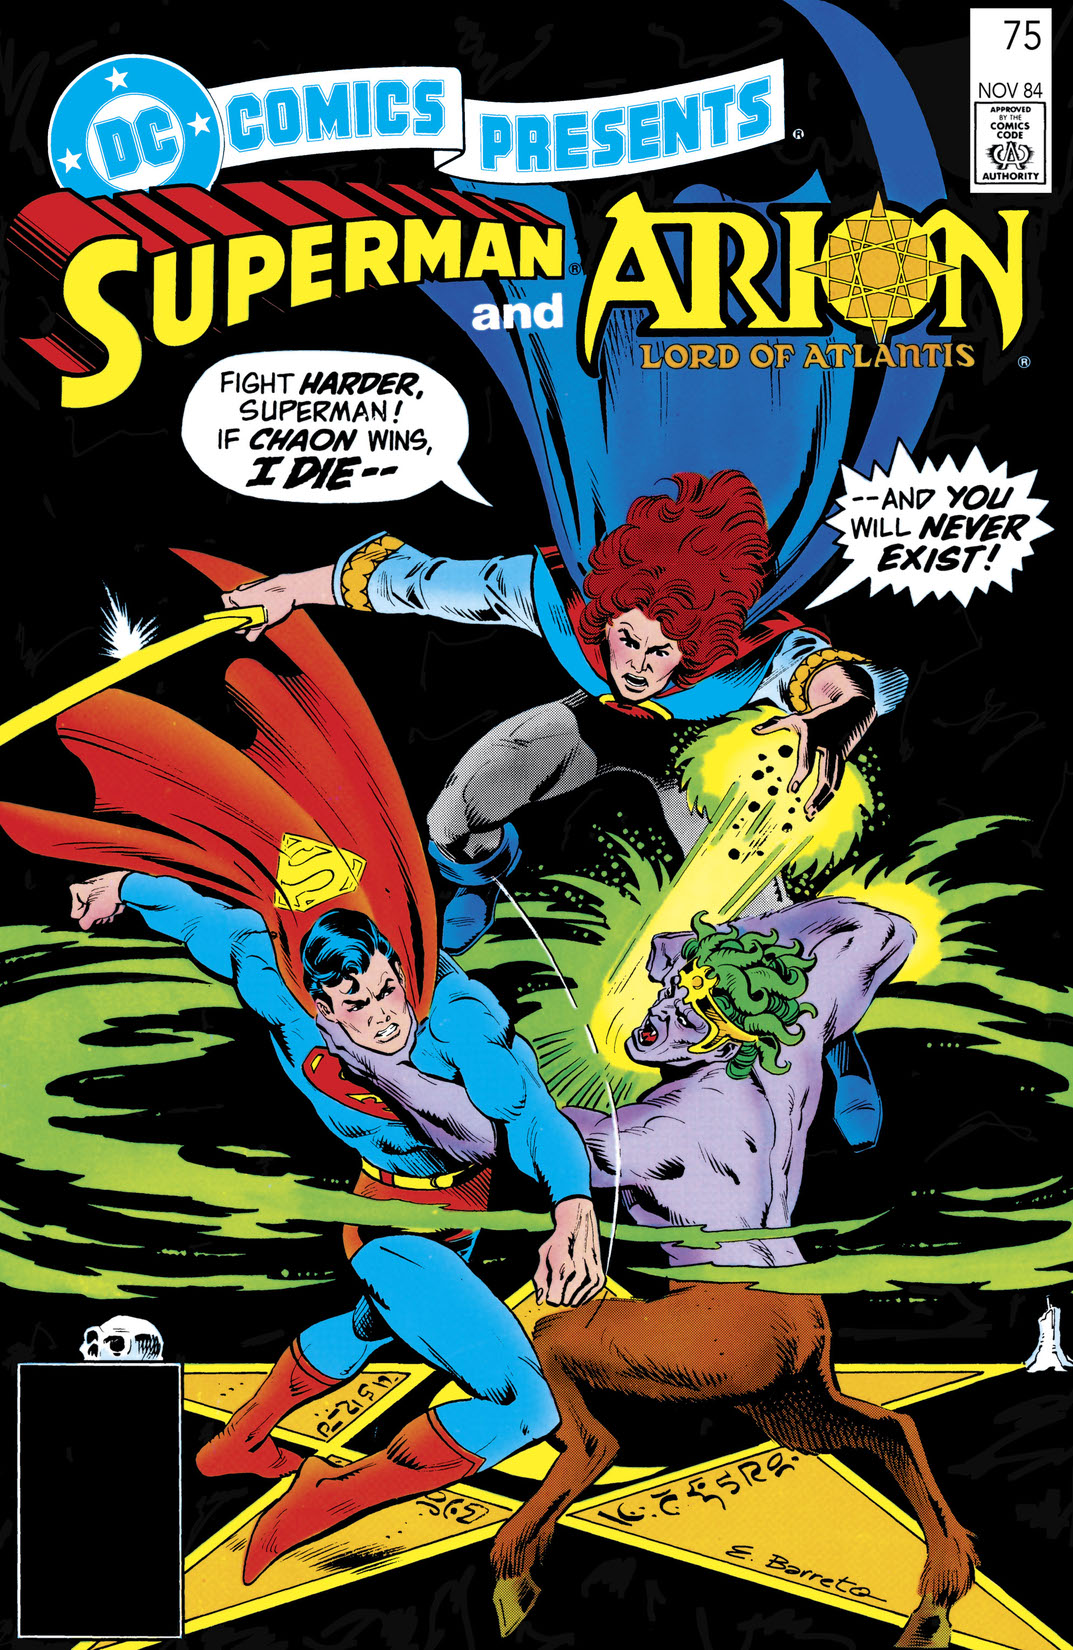 DC Comics Presents (1978-1986) #75 preview images